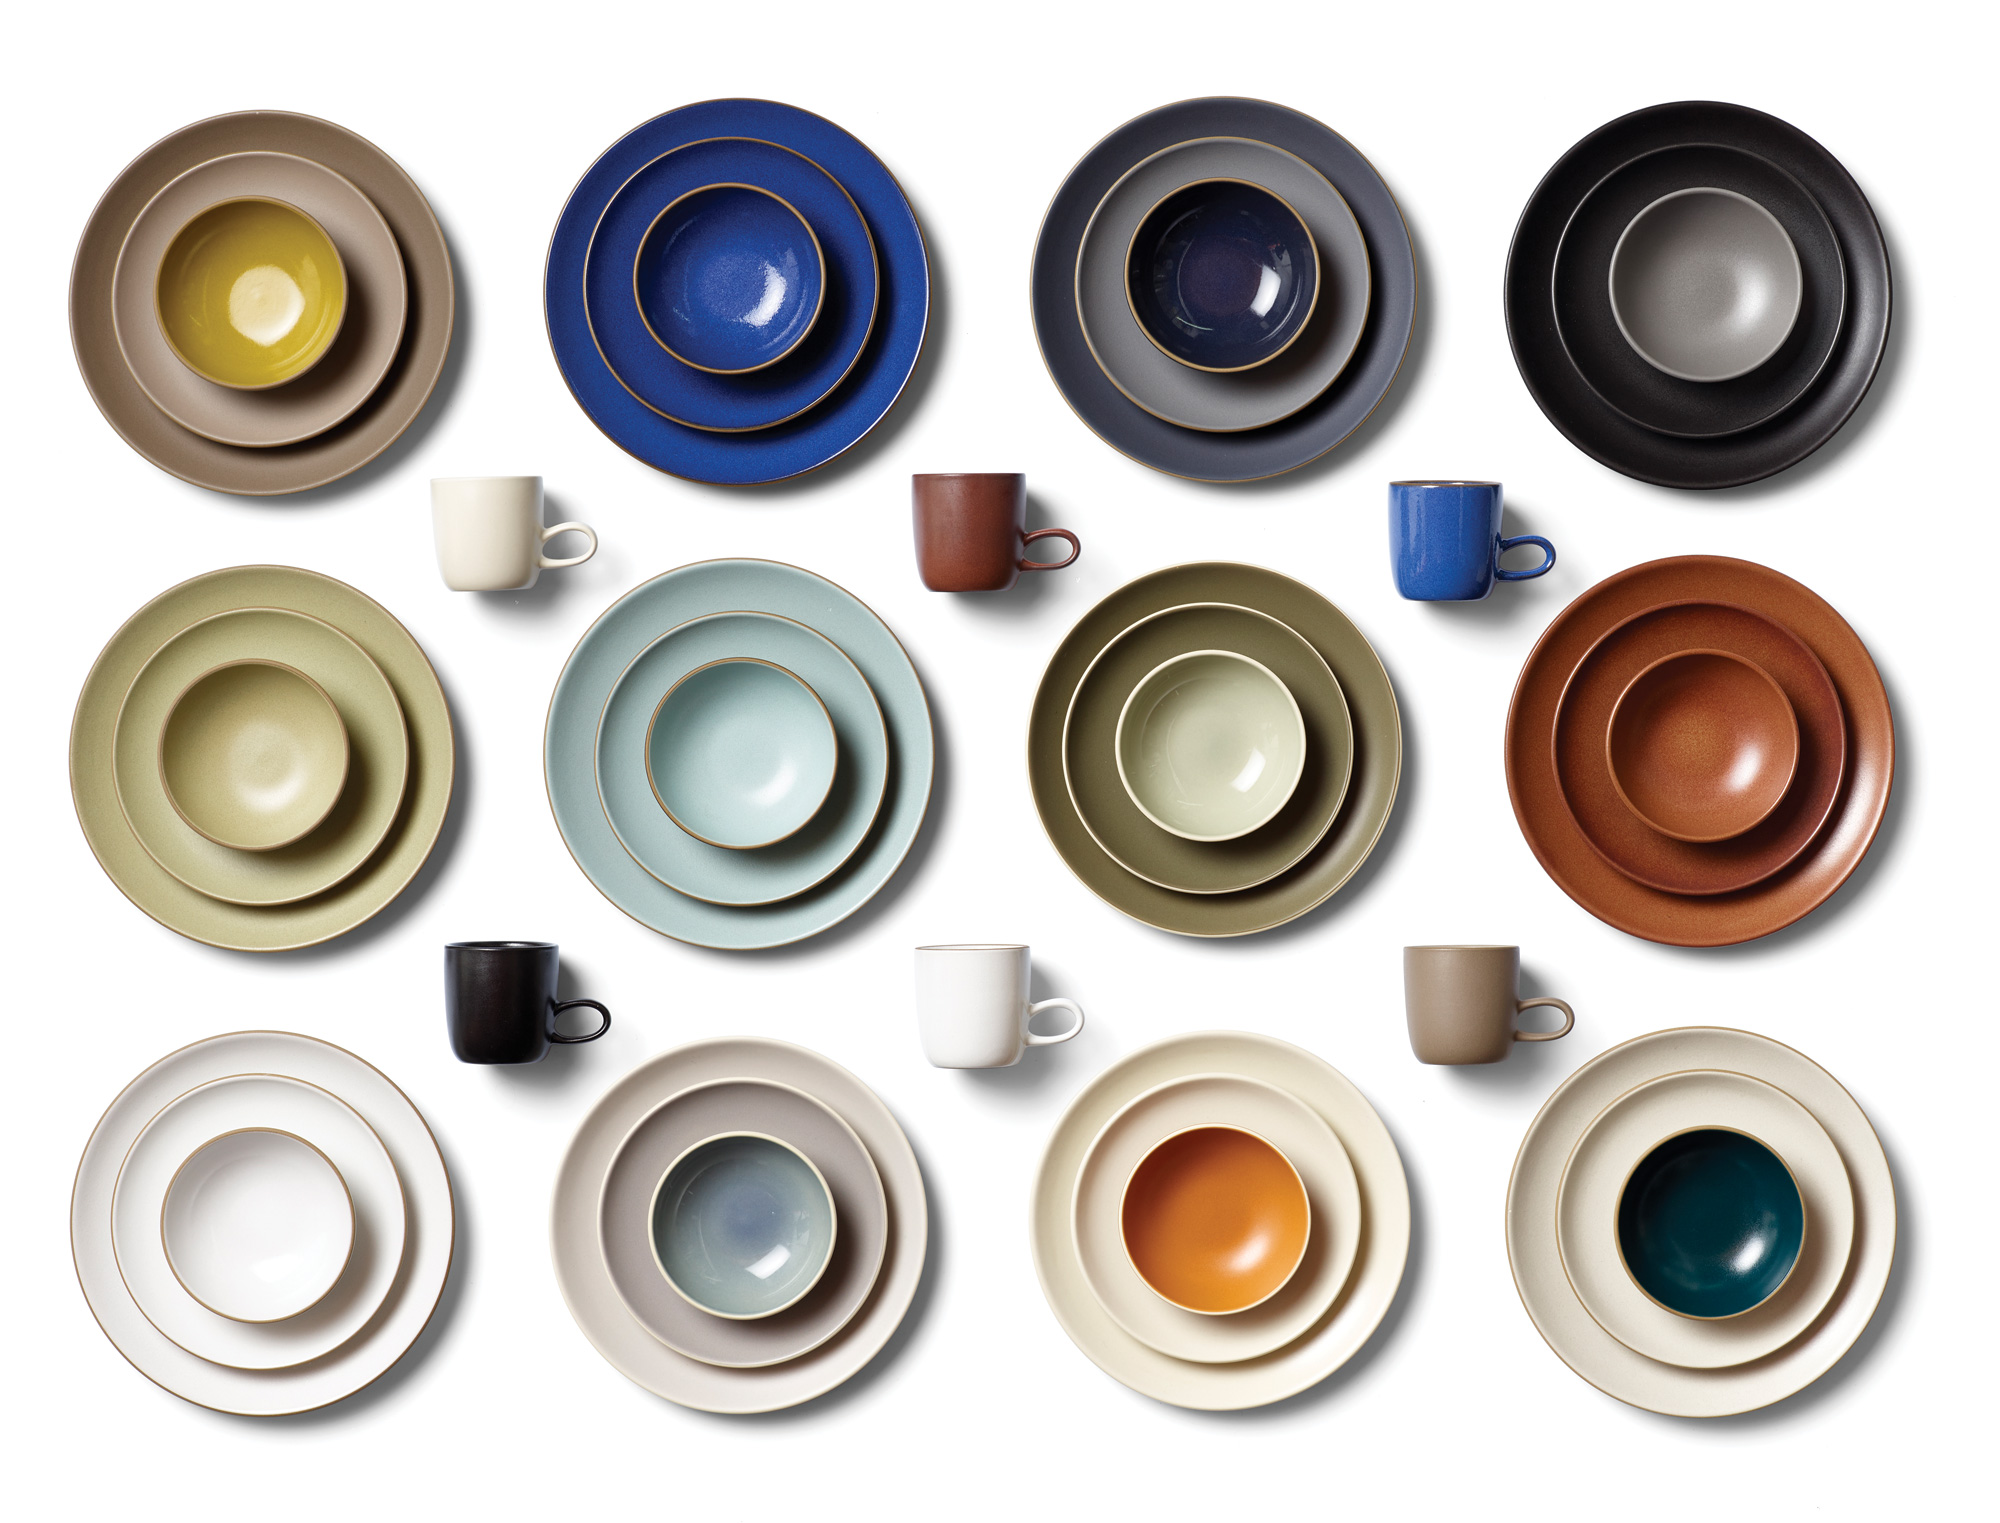 Heath Ceramics wares